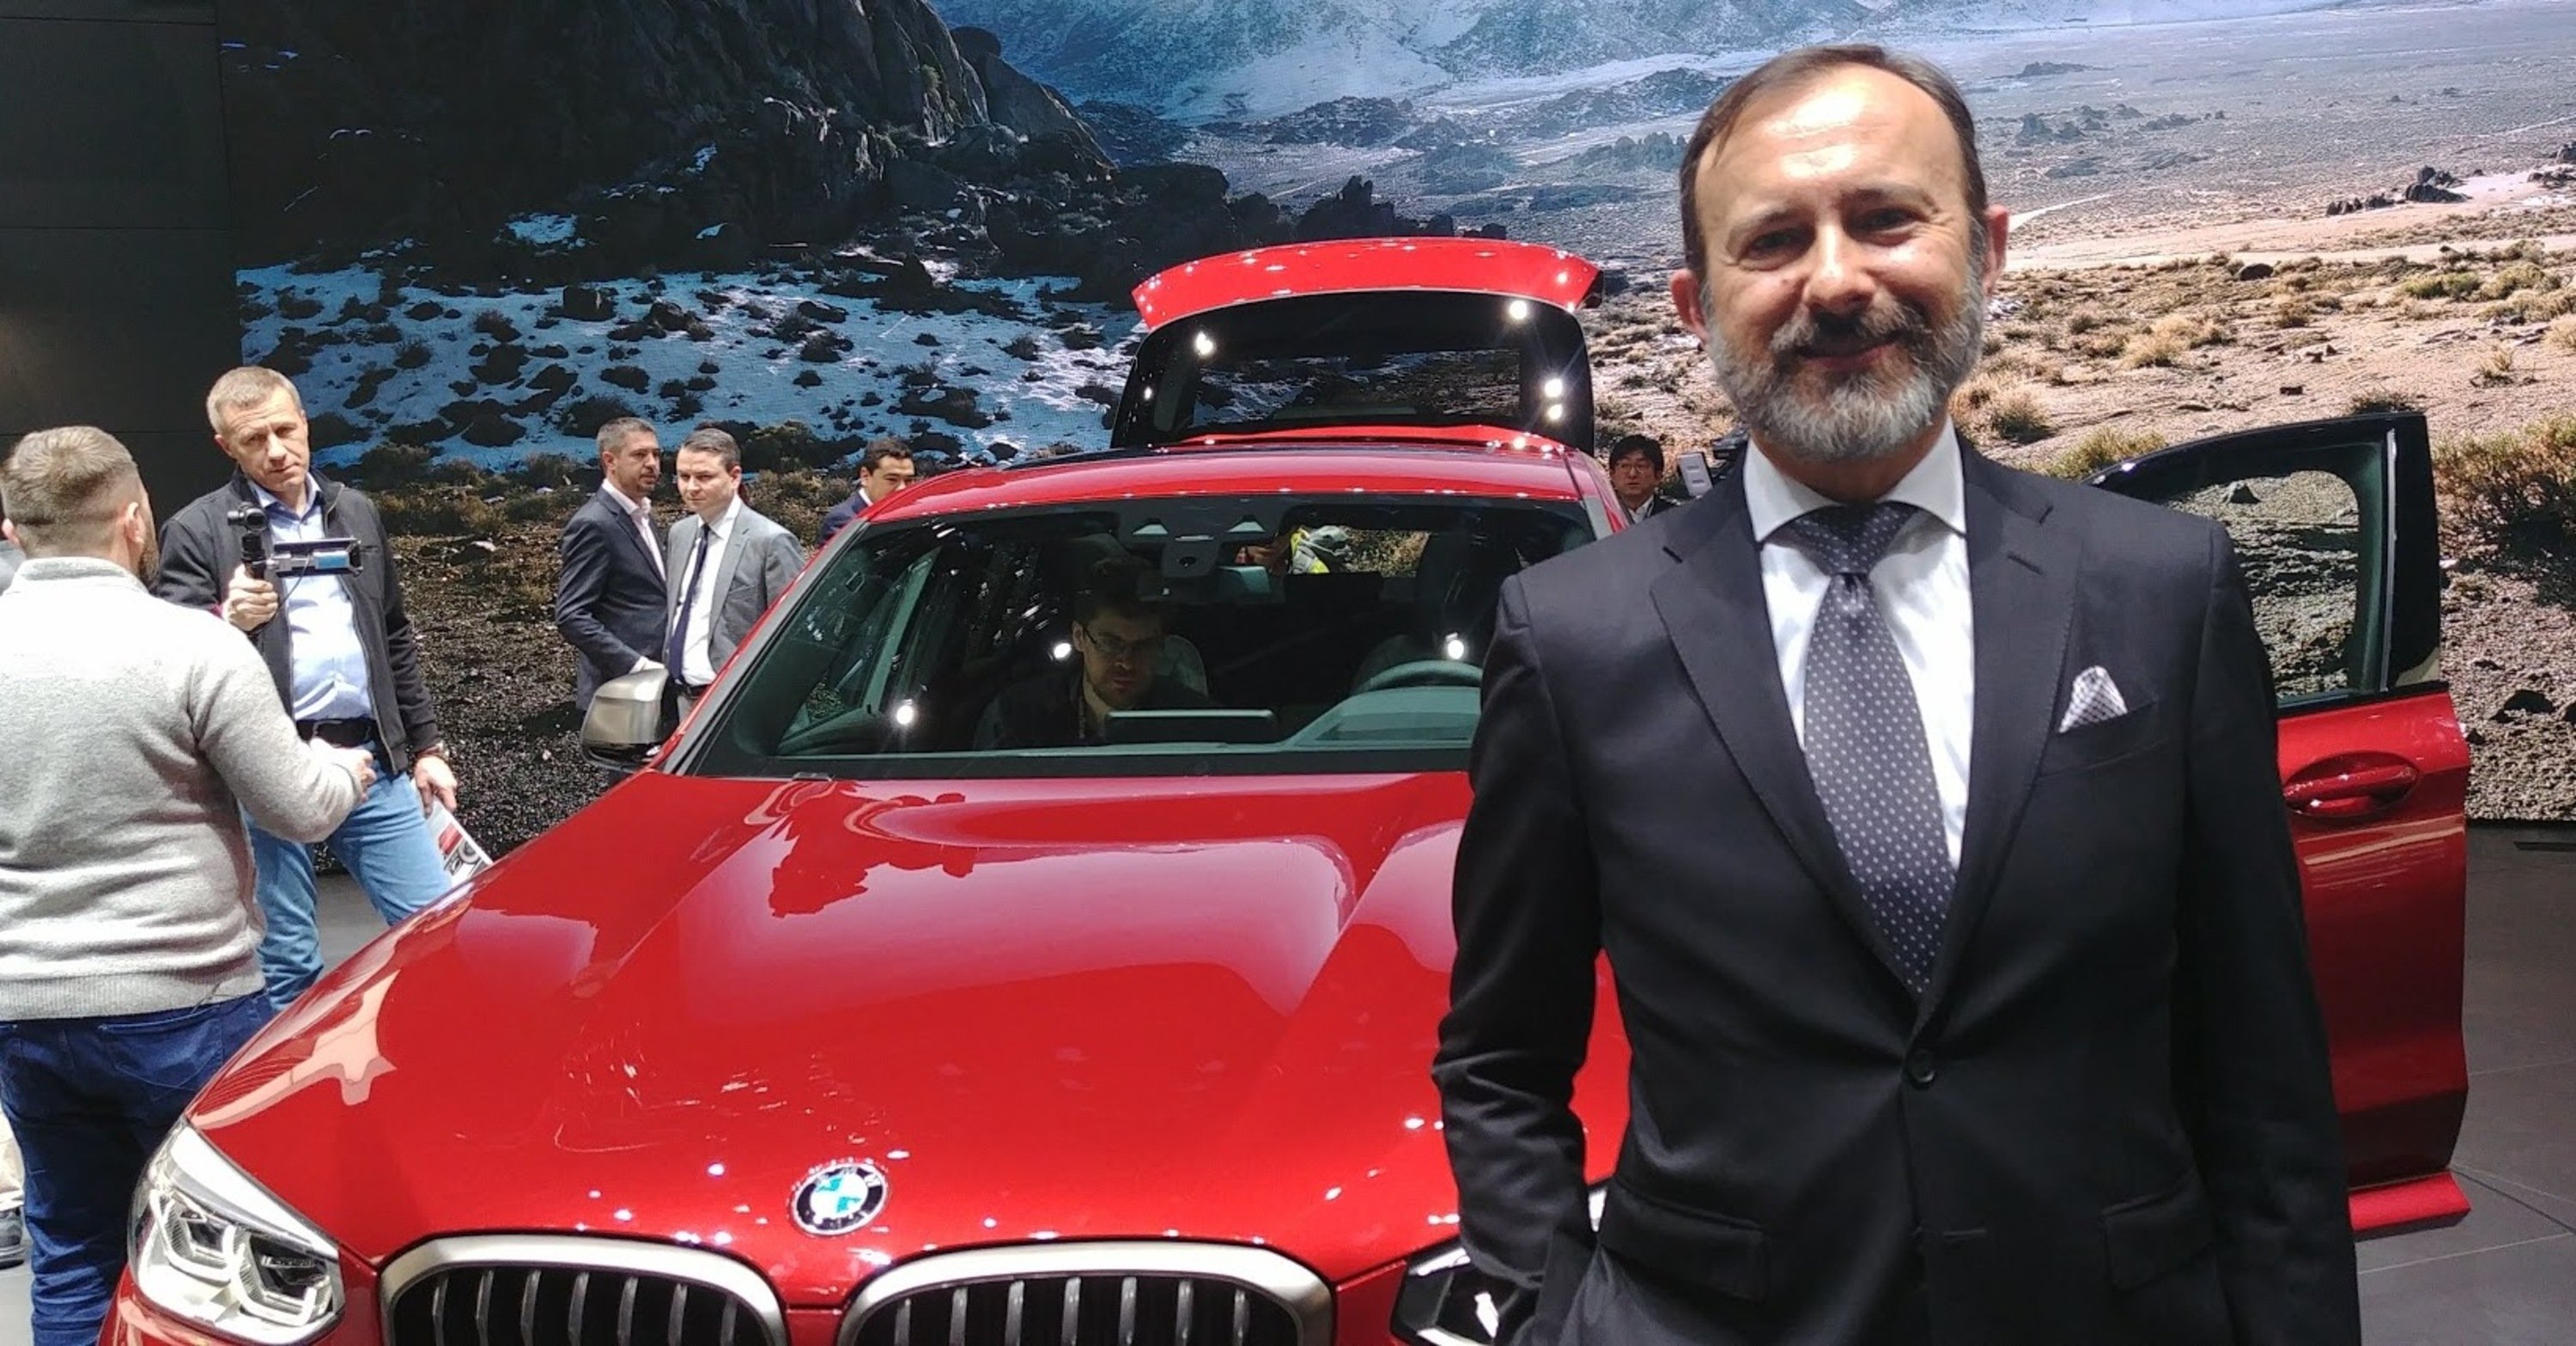 Salone di Ginevra 2018, Solero, BMW: &laquo;Siamo sempre pi&ugrave; orientati al cliente e alle sue necessit&agrave;&raquo;